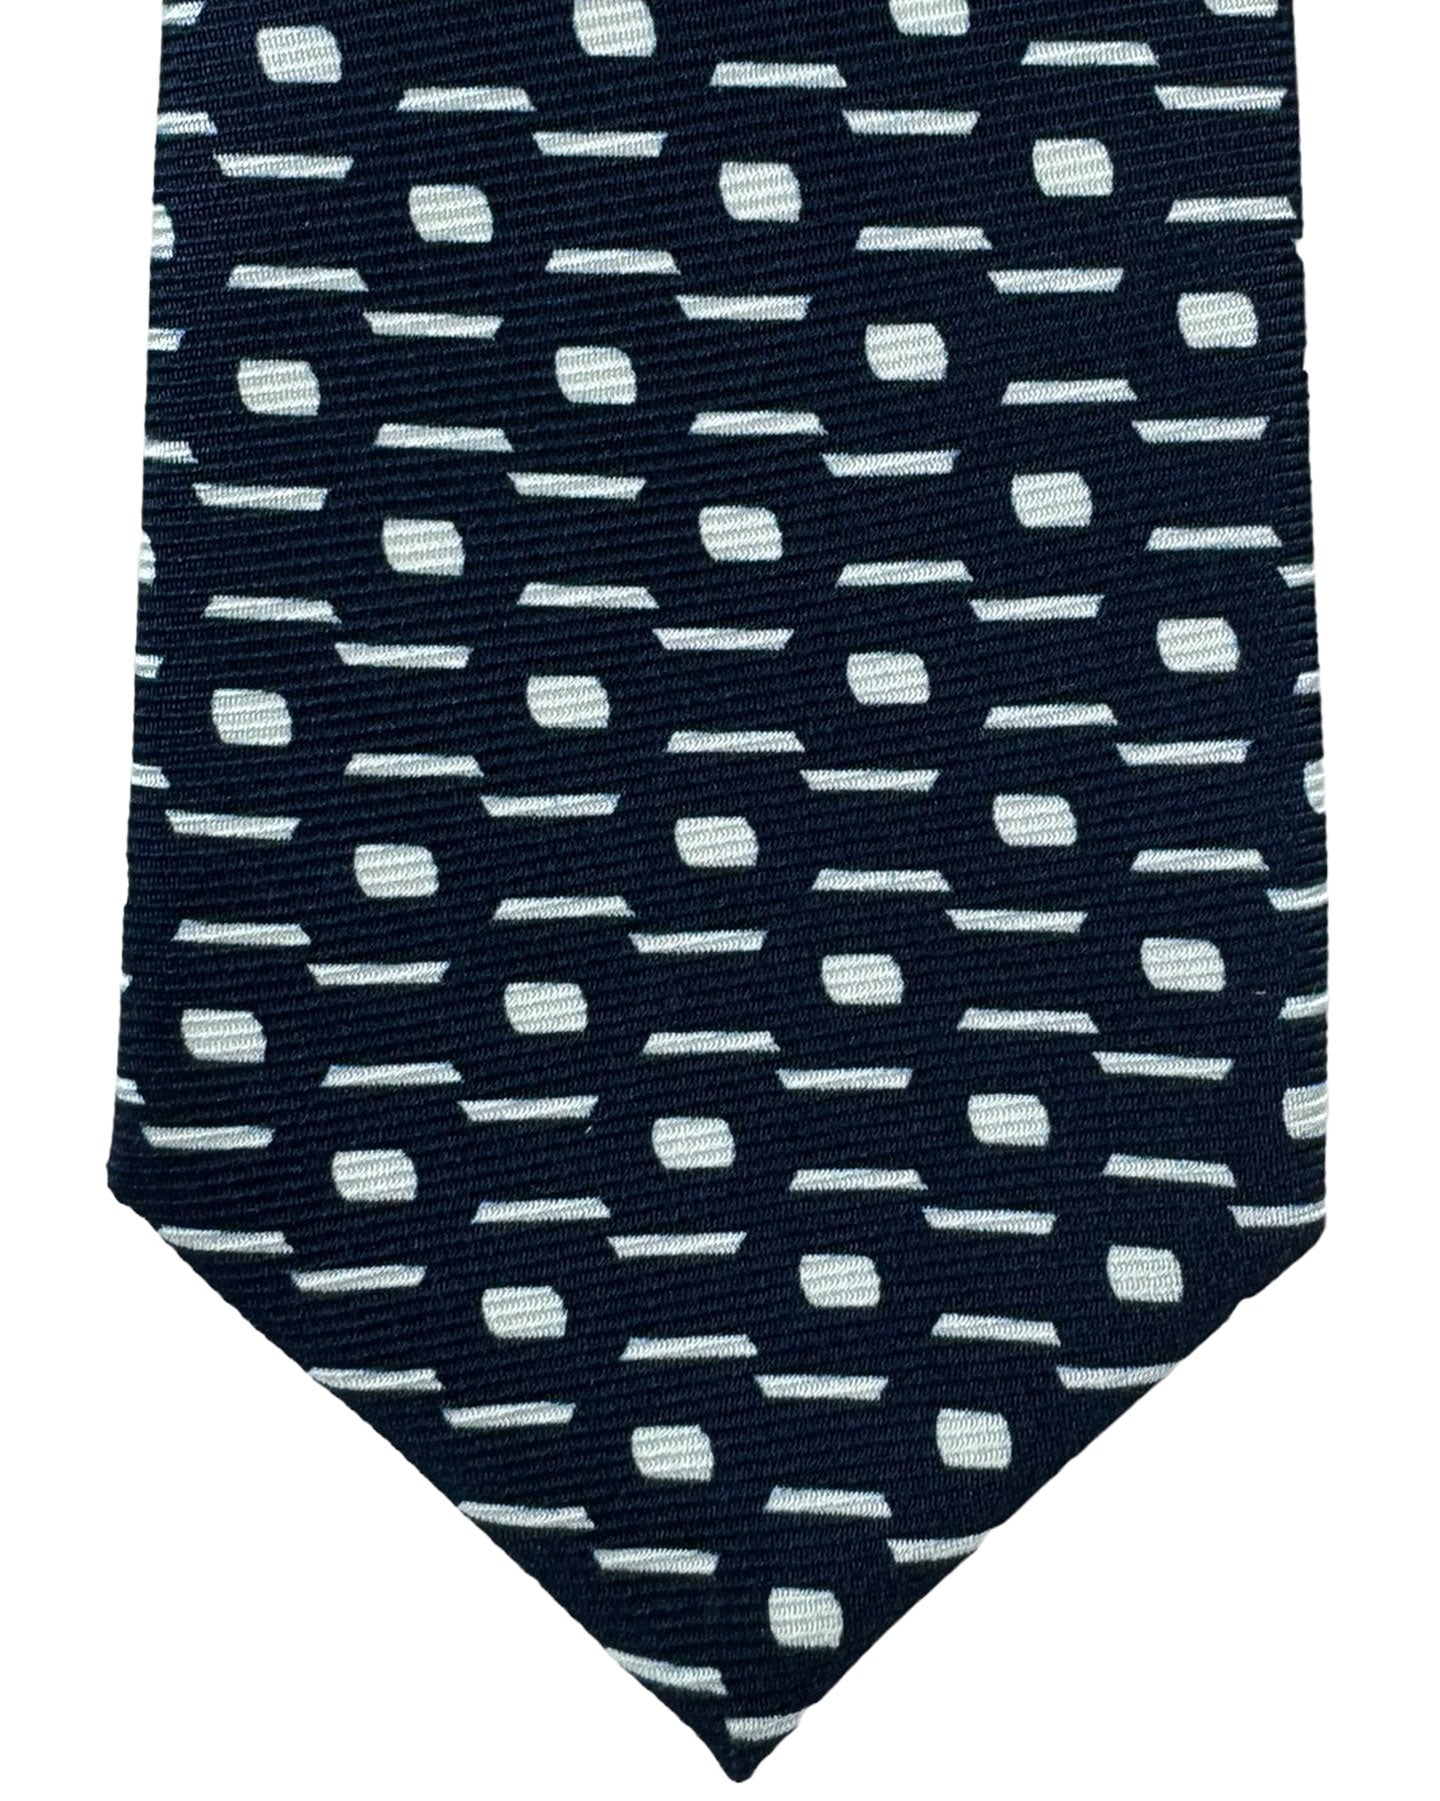 Kiton Tie Dark Blue White Geometric - Sevenfold Necktie